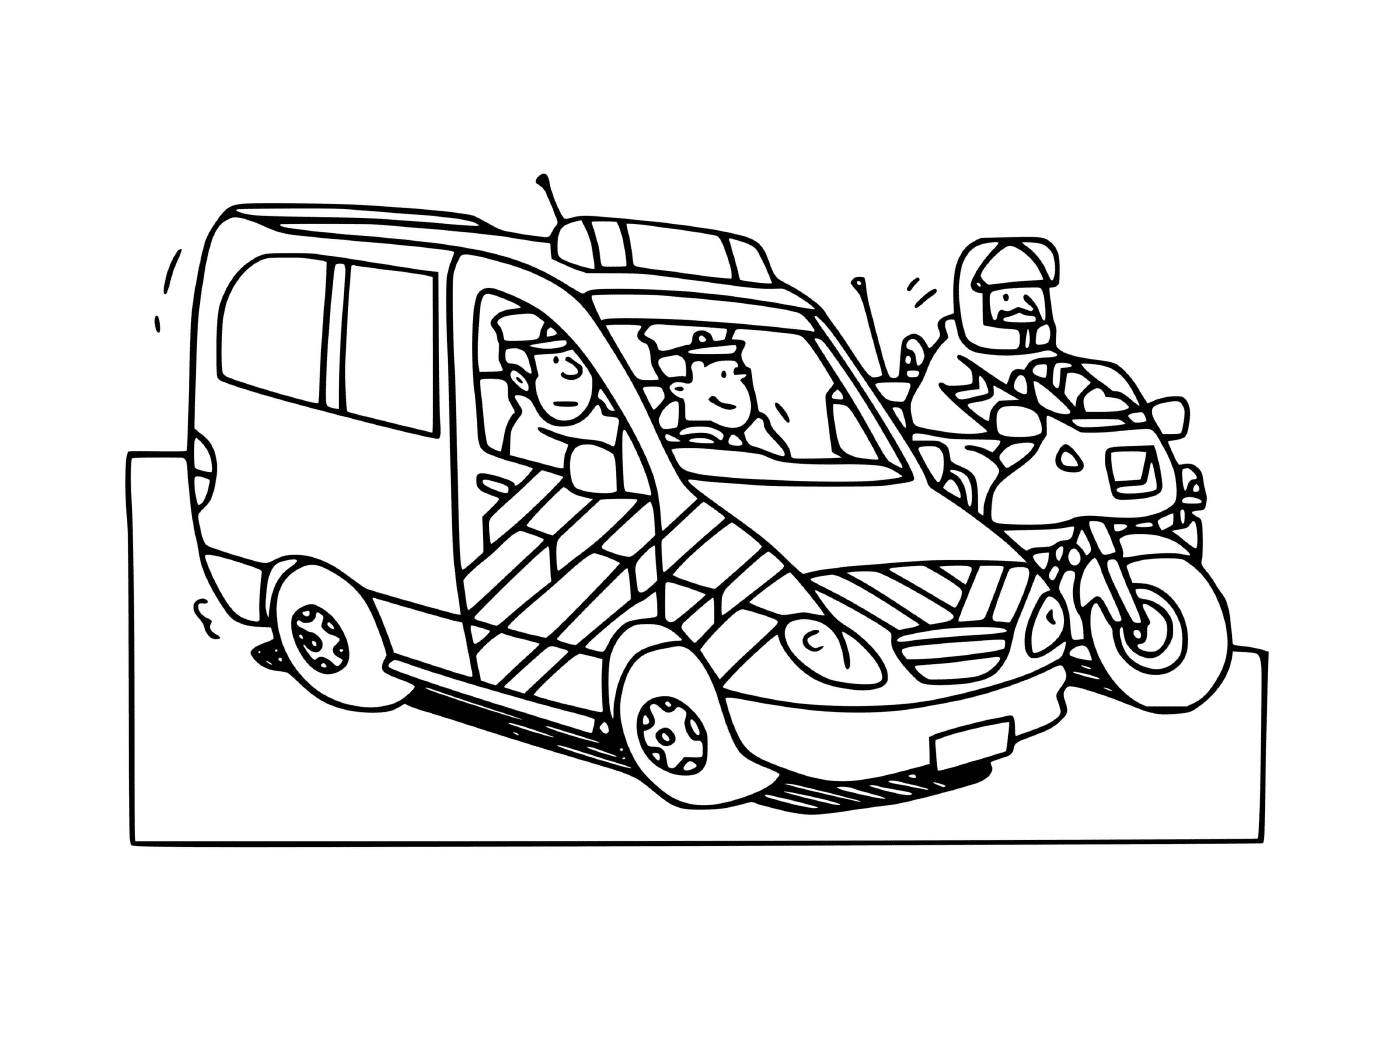  法国警车和警用摩托车 